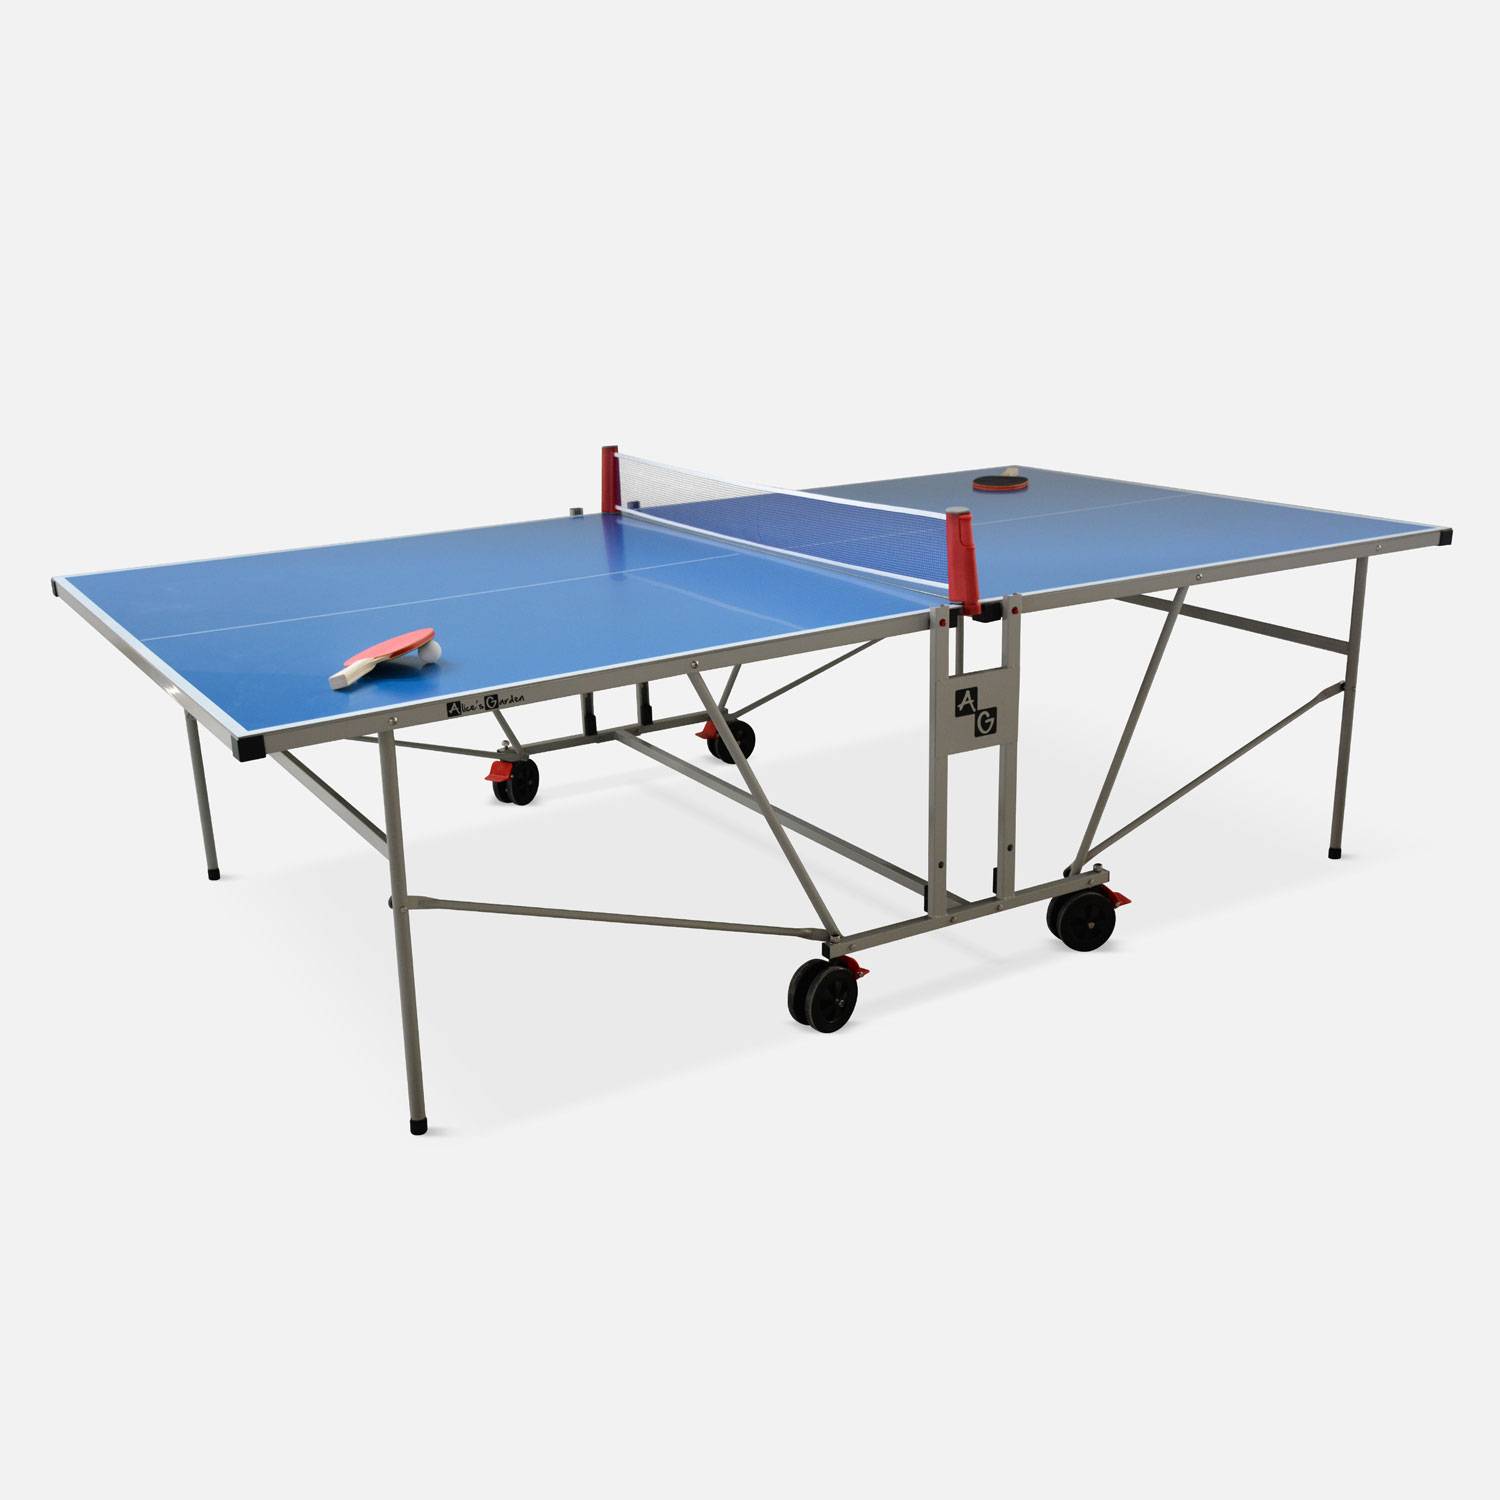 Table de ping pong OUTDOOR bleue avec housse de protection, table pliable avec 2 raquettes et 3 balles, pour utilisation extérieure, sport tennis de table Photo2